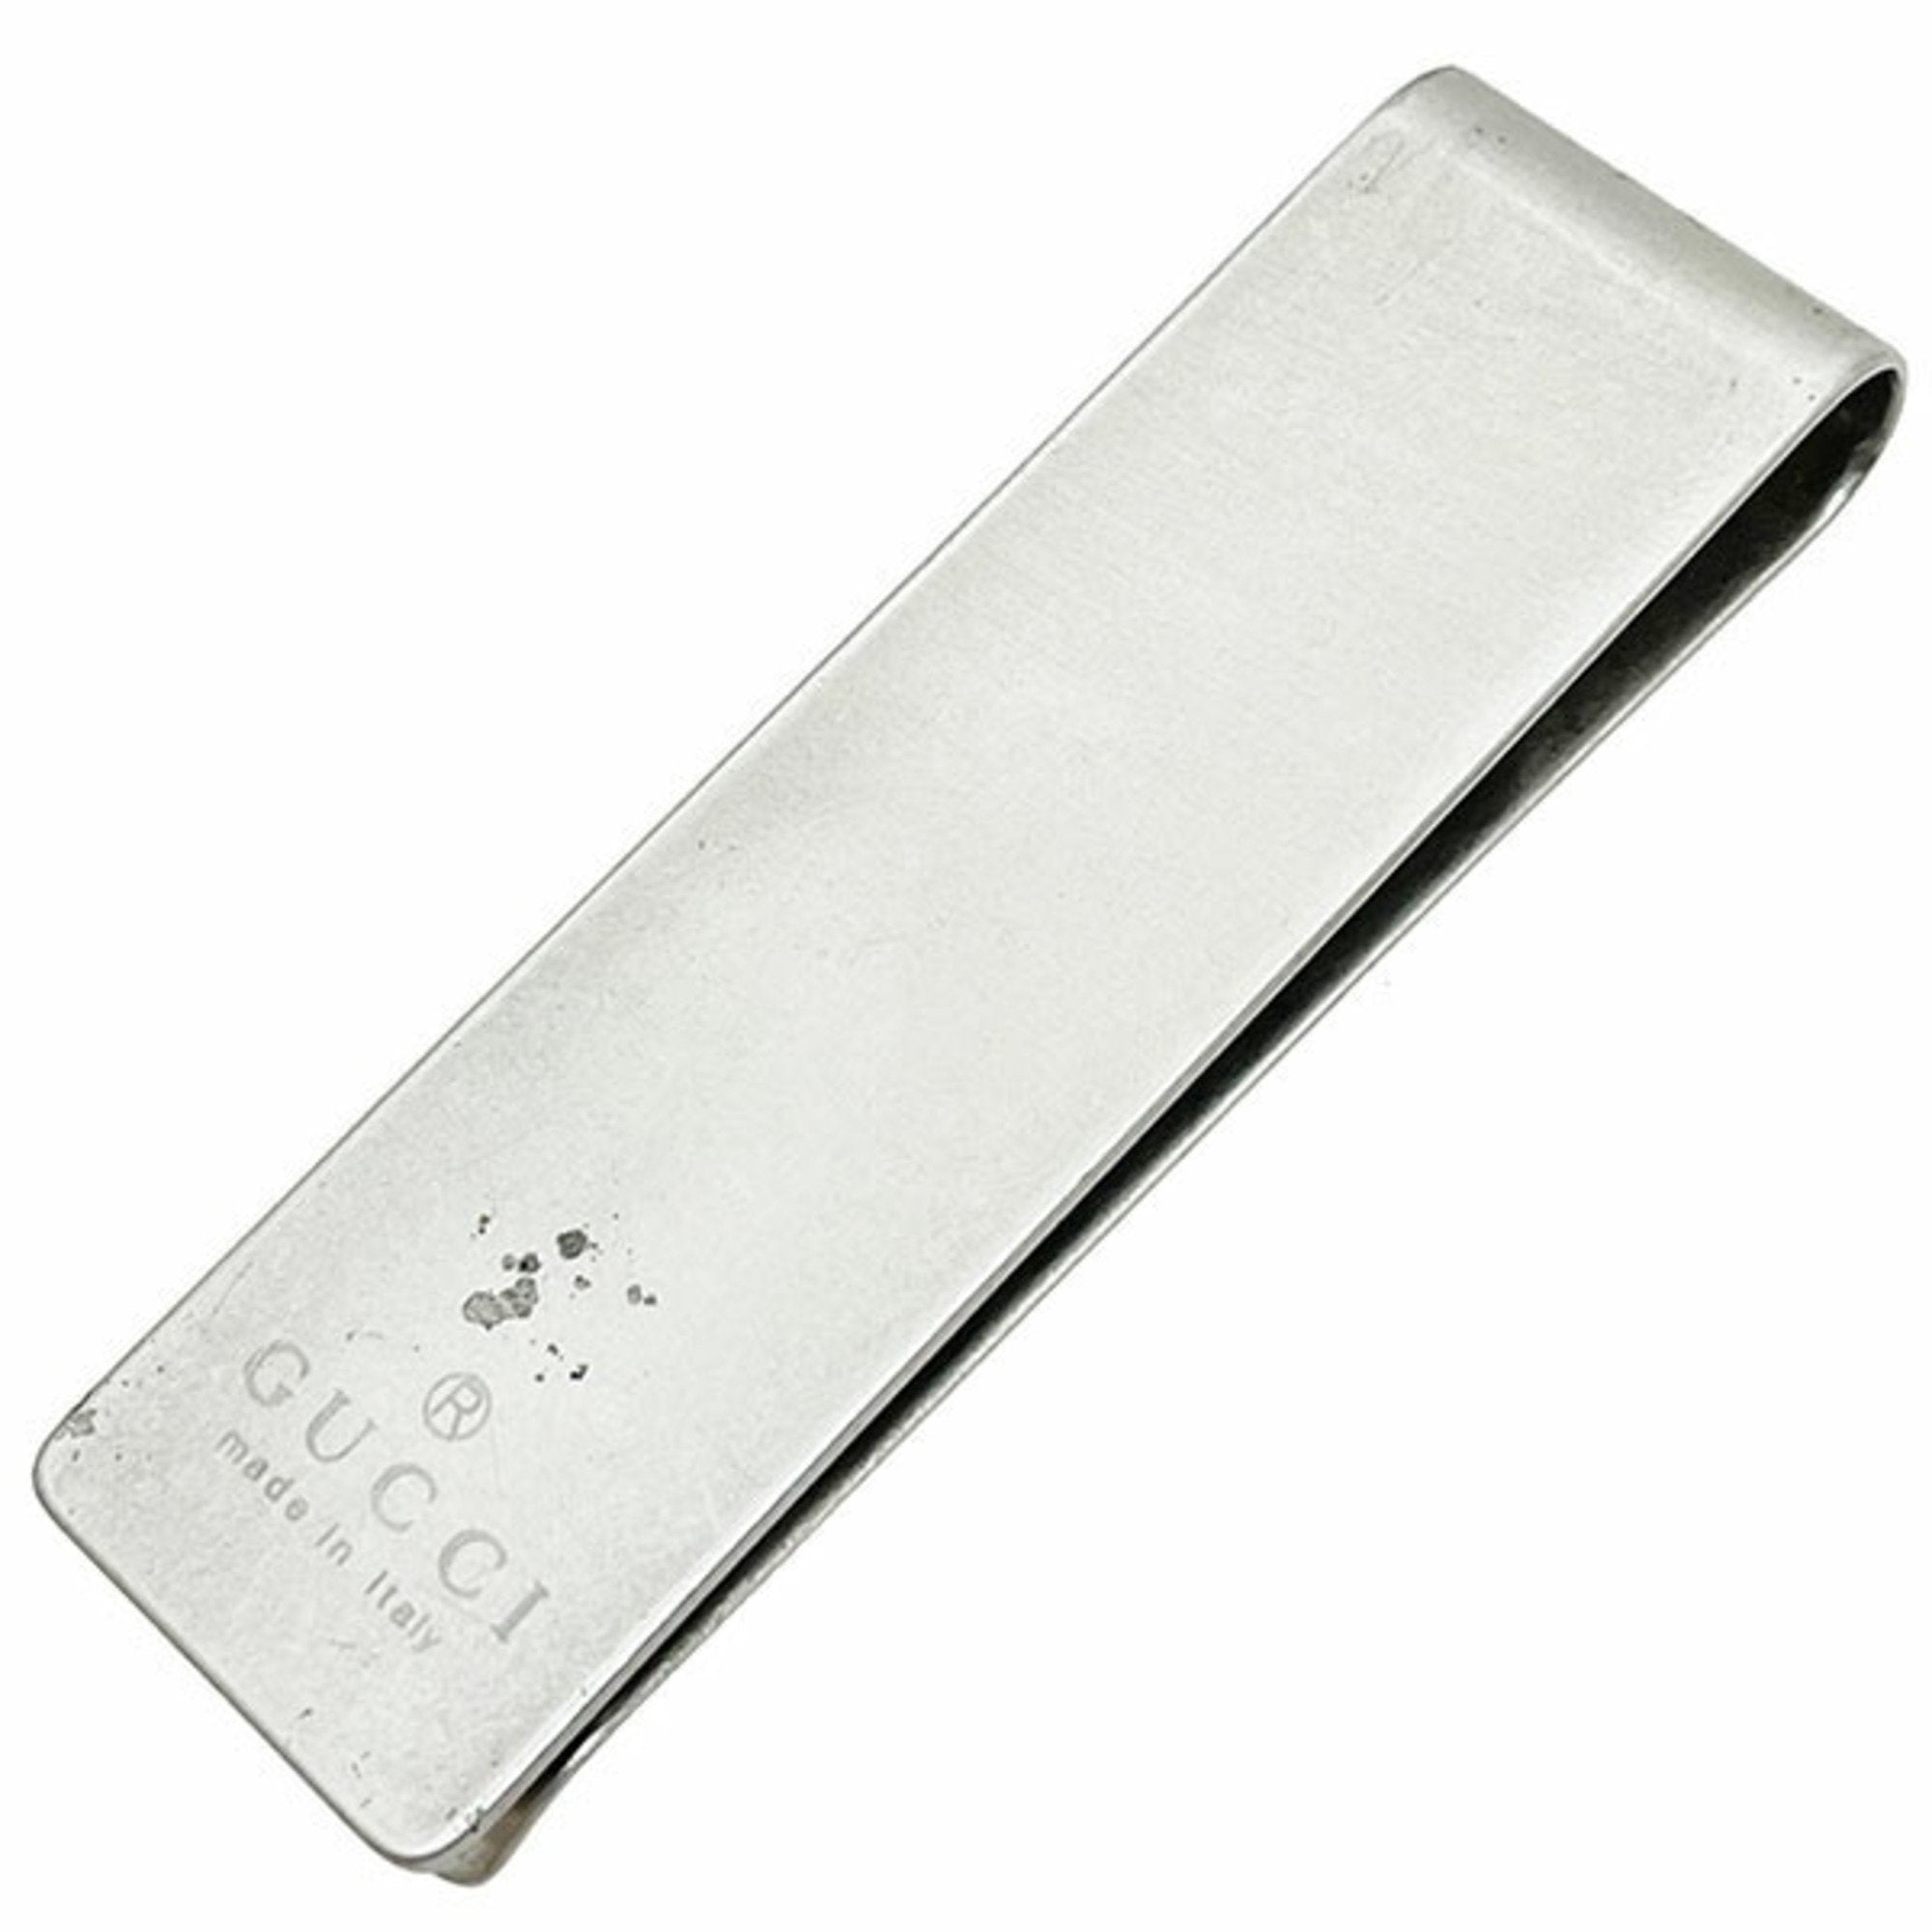 Gucci money clip silver metal GUCCI wallet